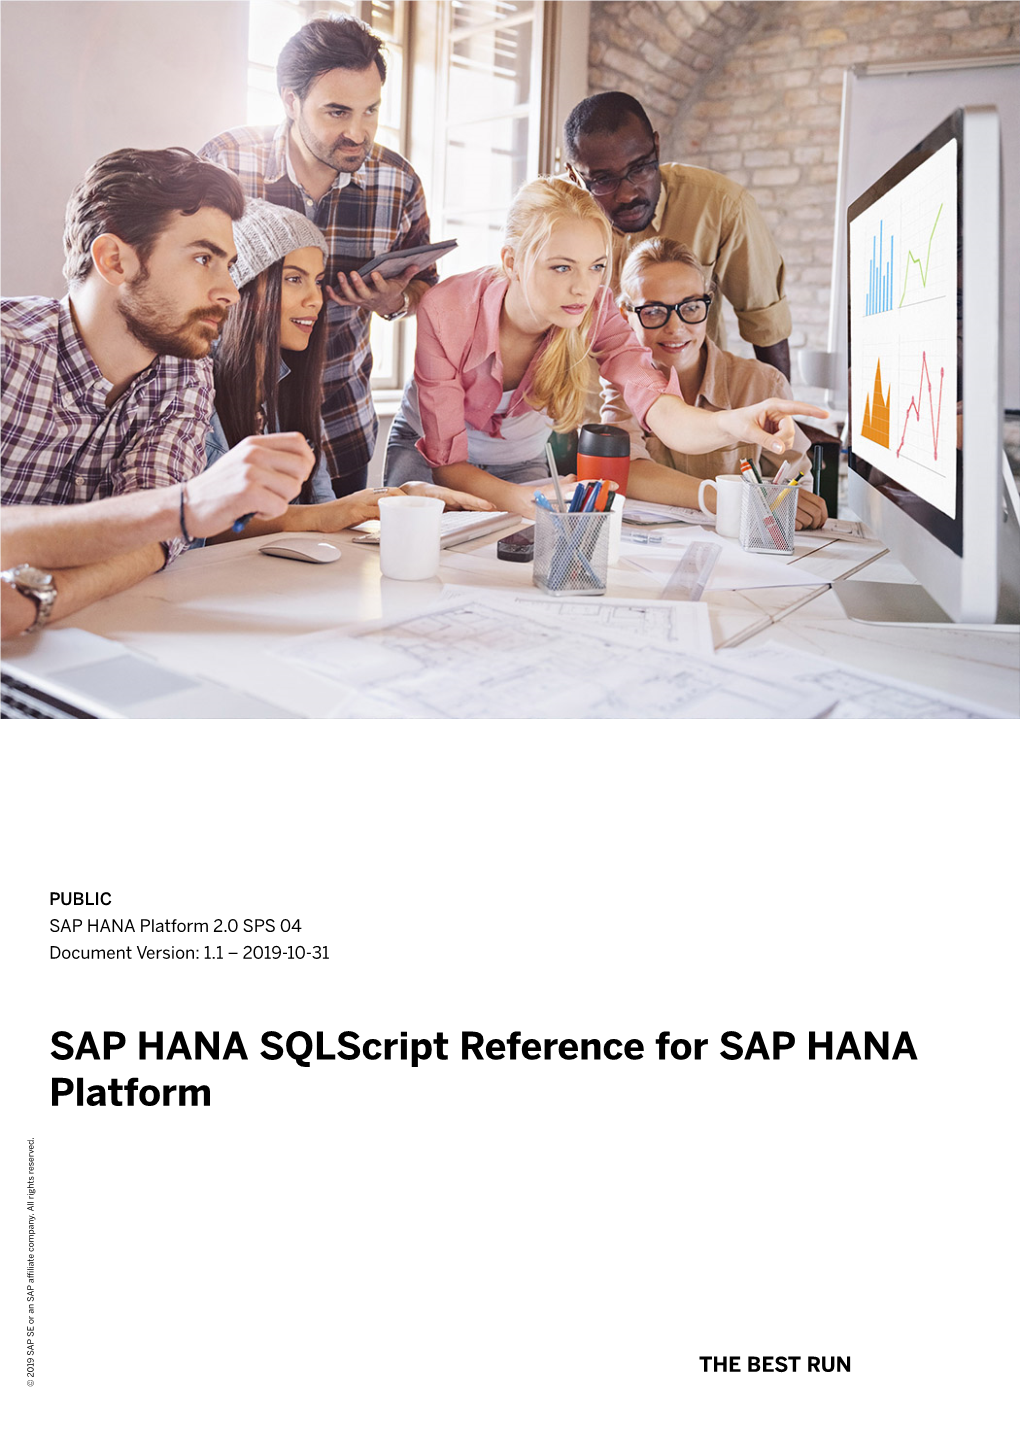 SAP HANA Sqlscript Reference for SAP HANA Platform Company